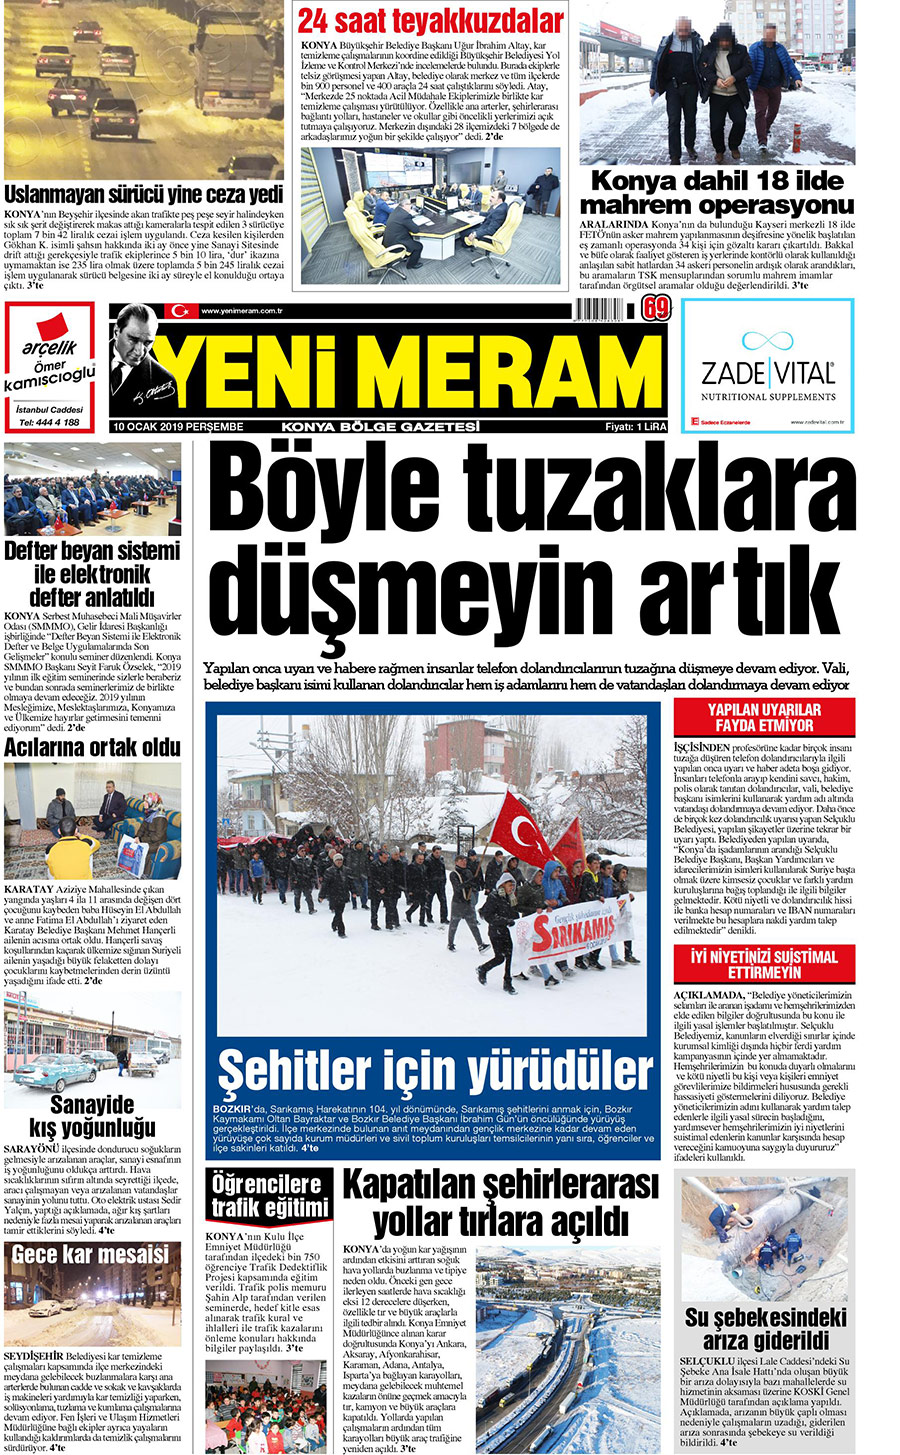 10 Ocak 2019 Yeni Meram Gazetesi